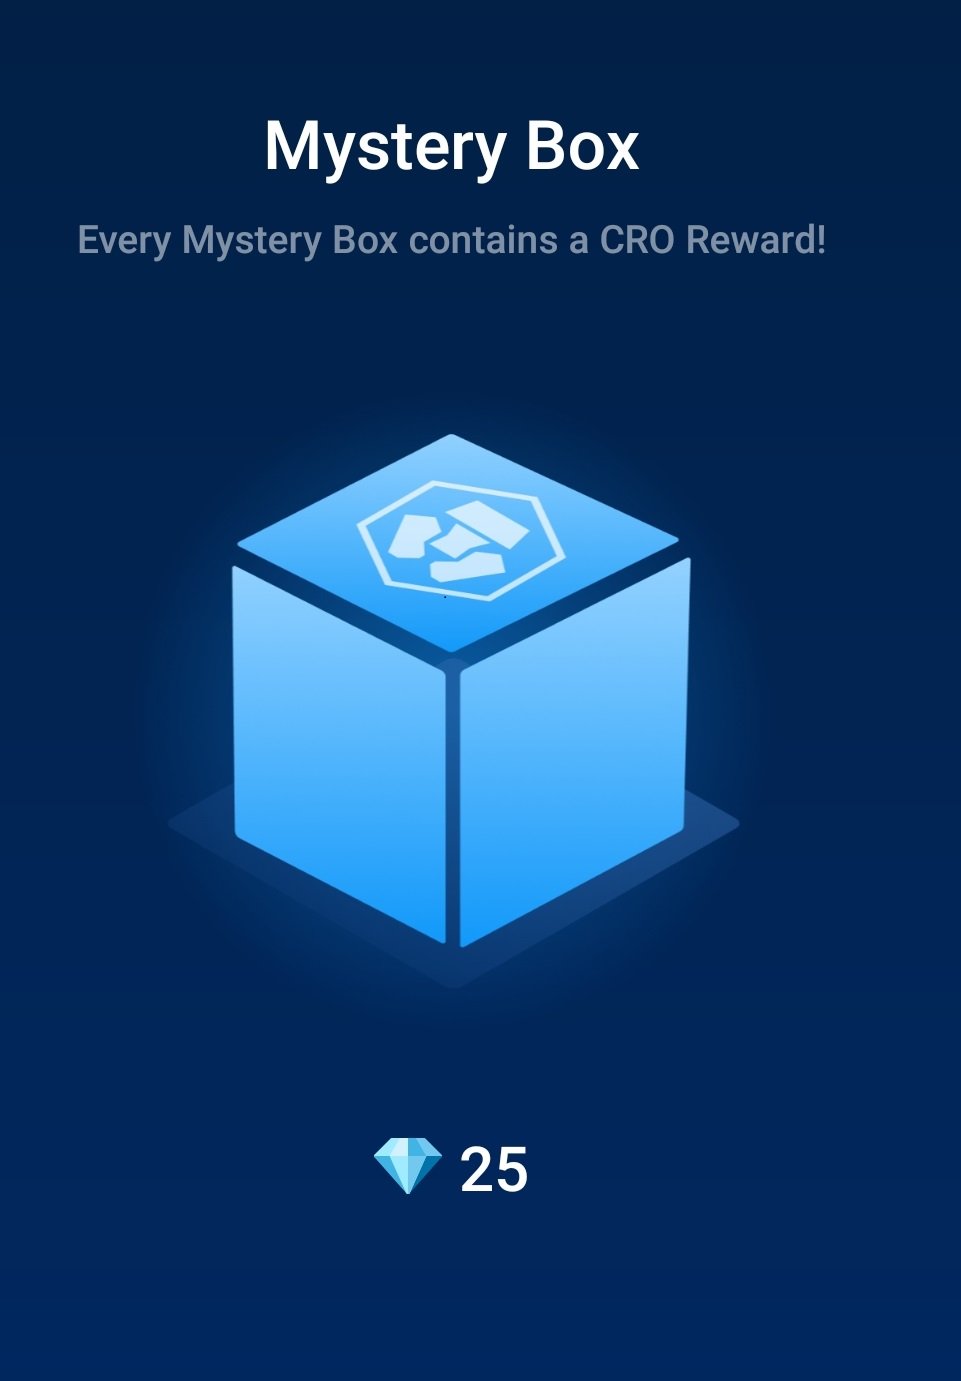 mystery box crypto.com